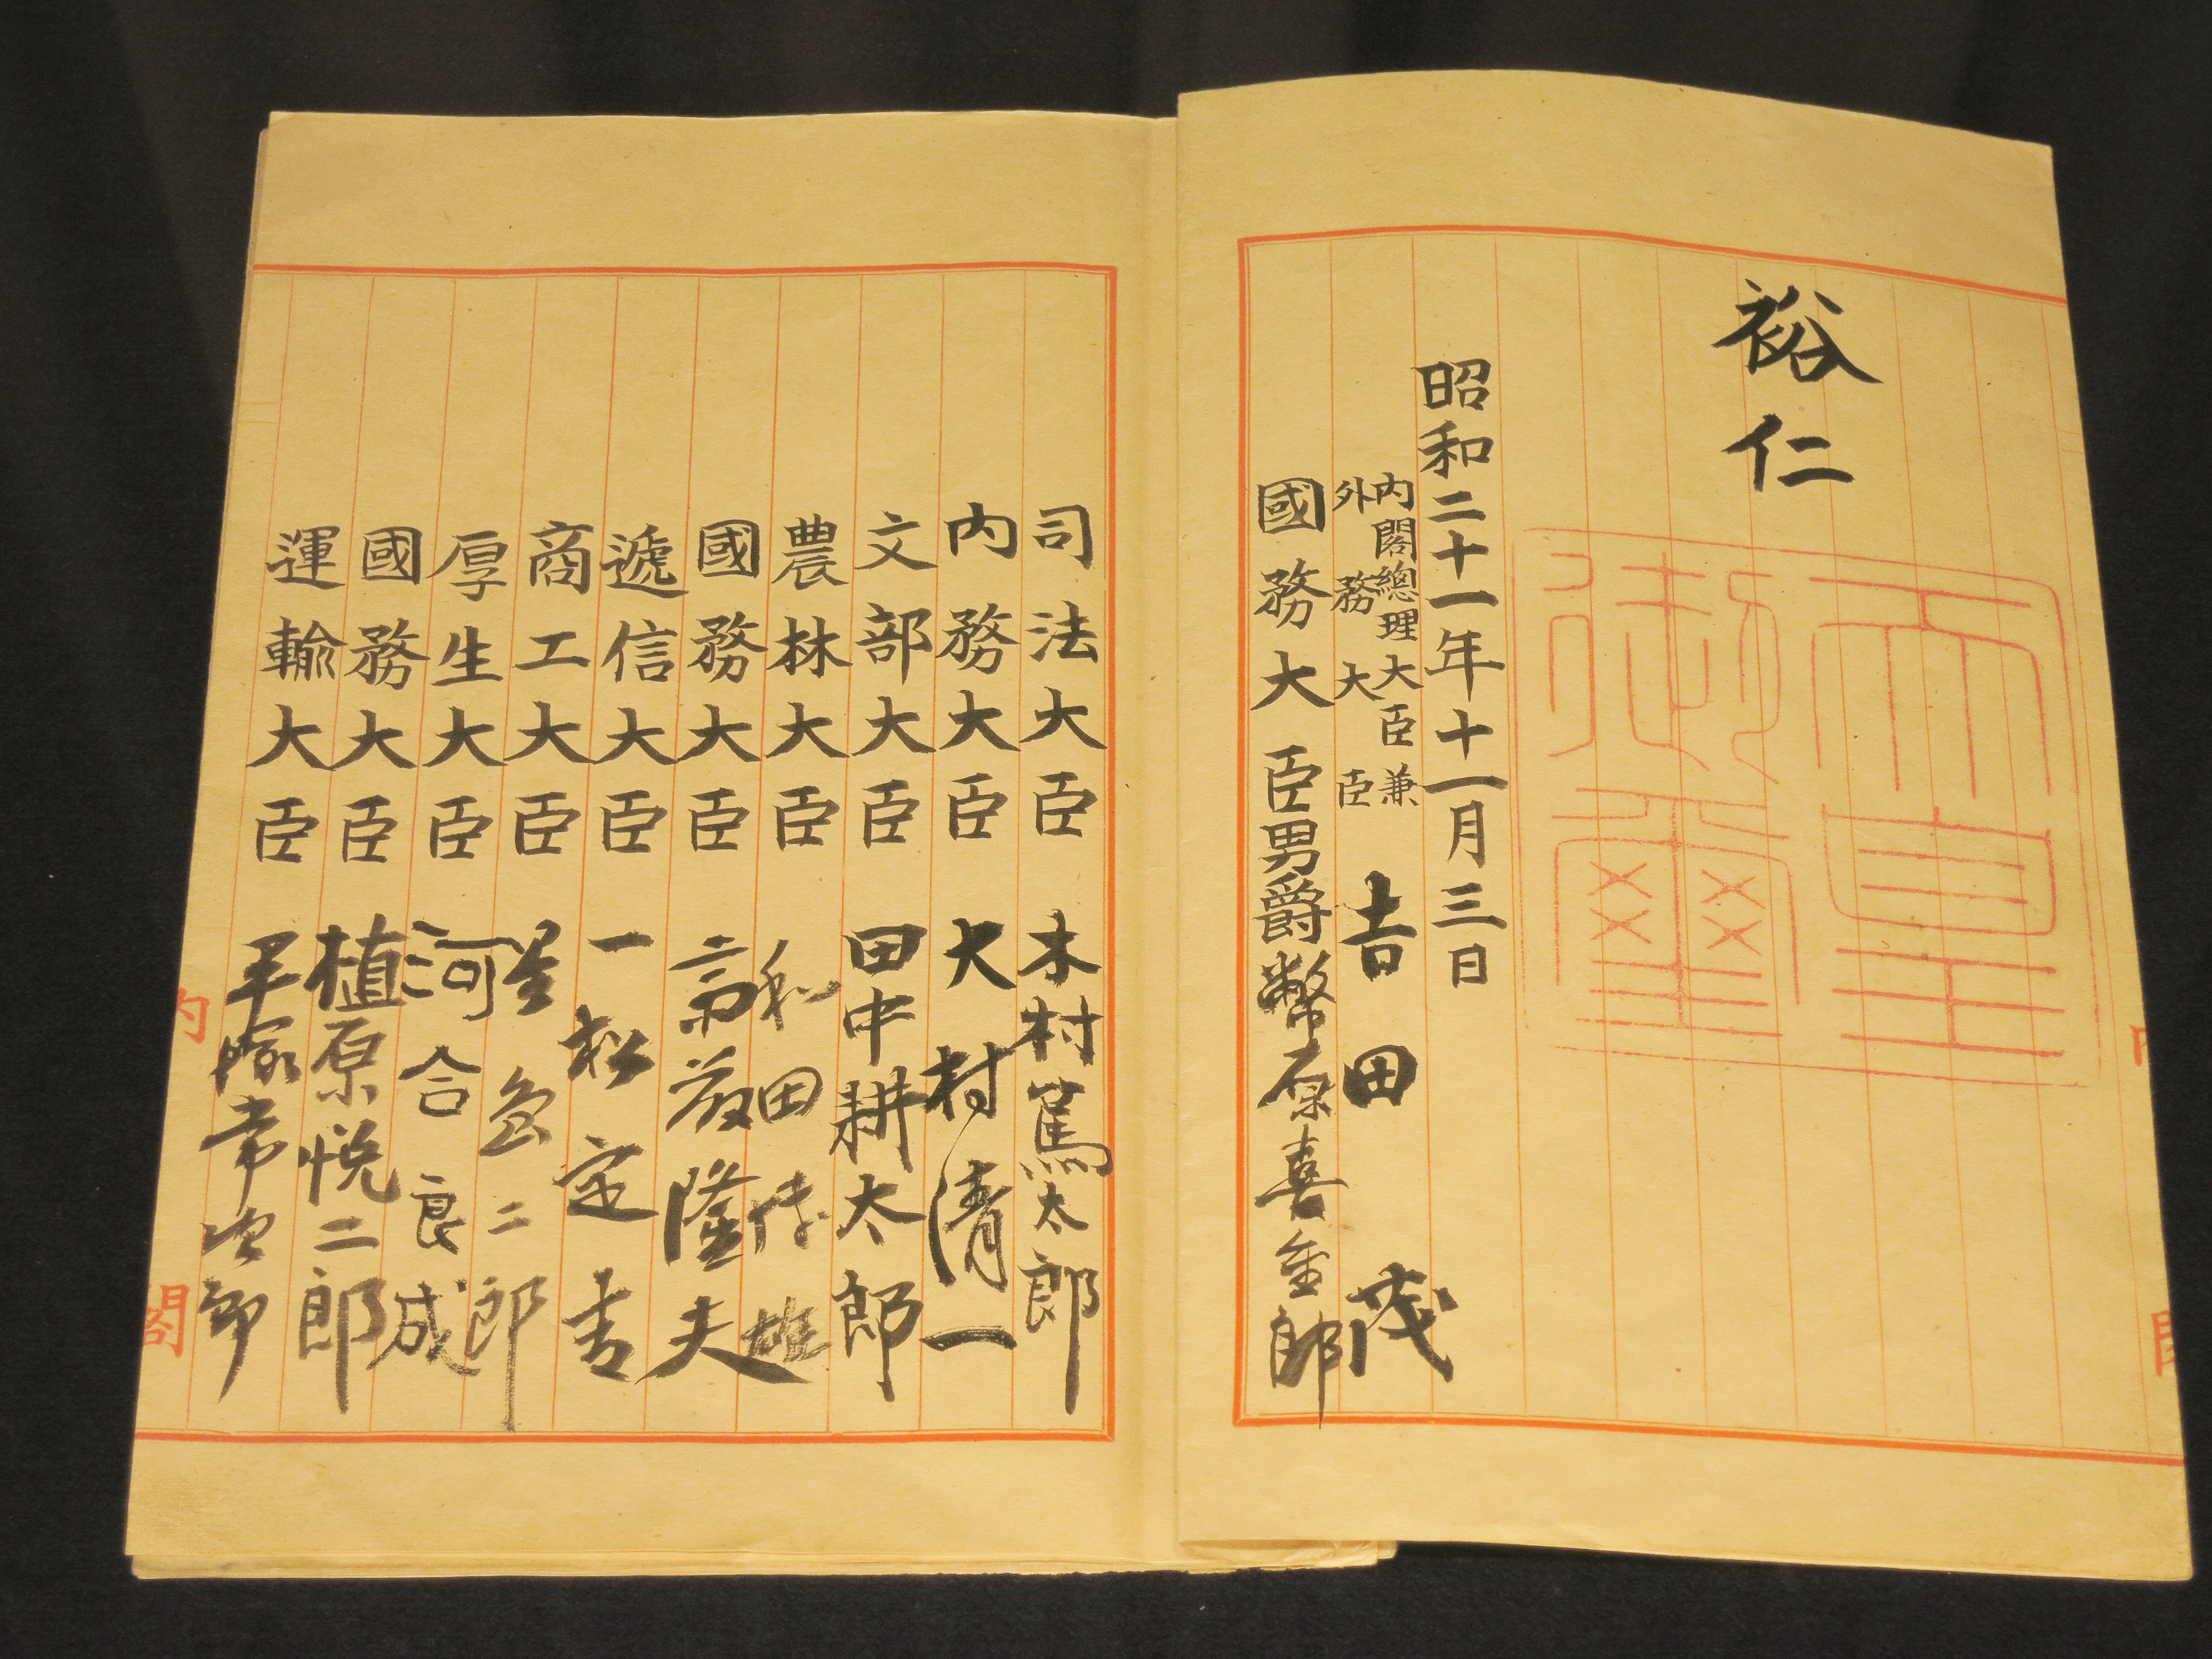 昭和二十一年（1947年）通过的《日本国宪法》，时任首相是吉田茂